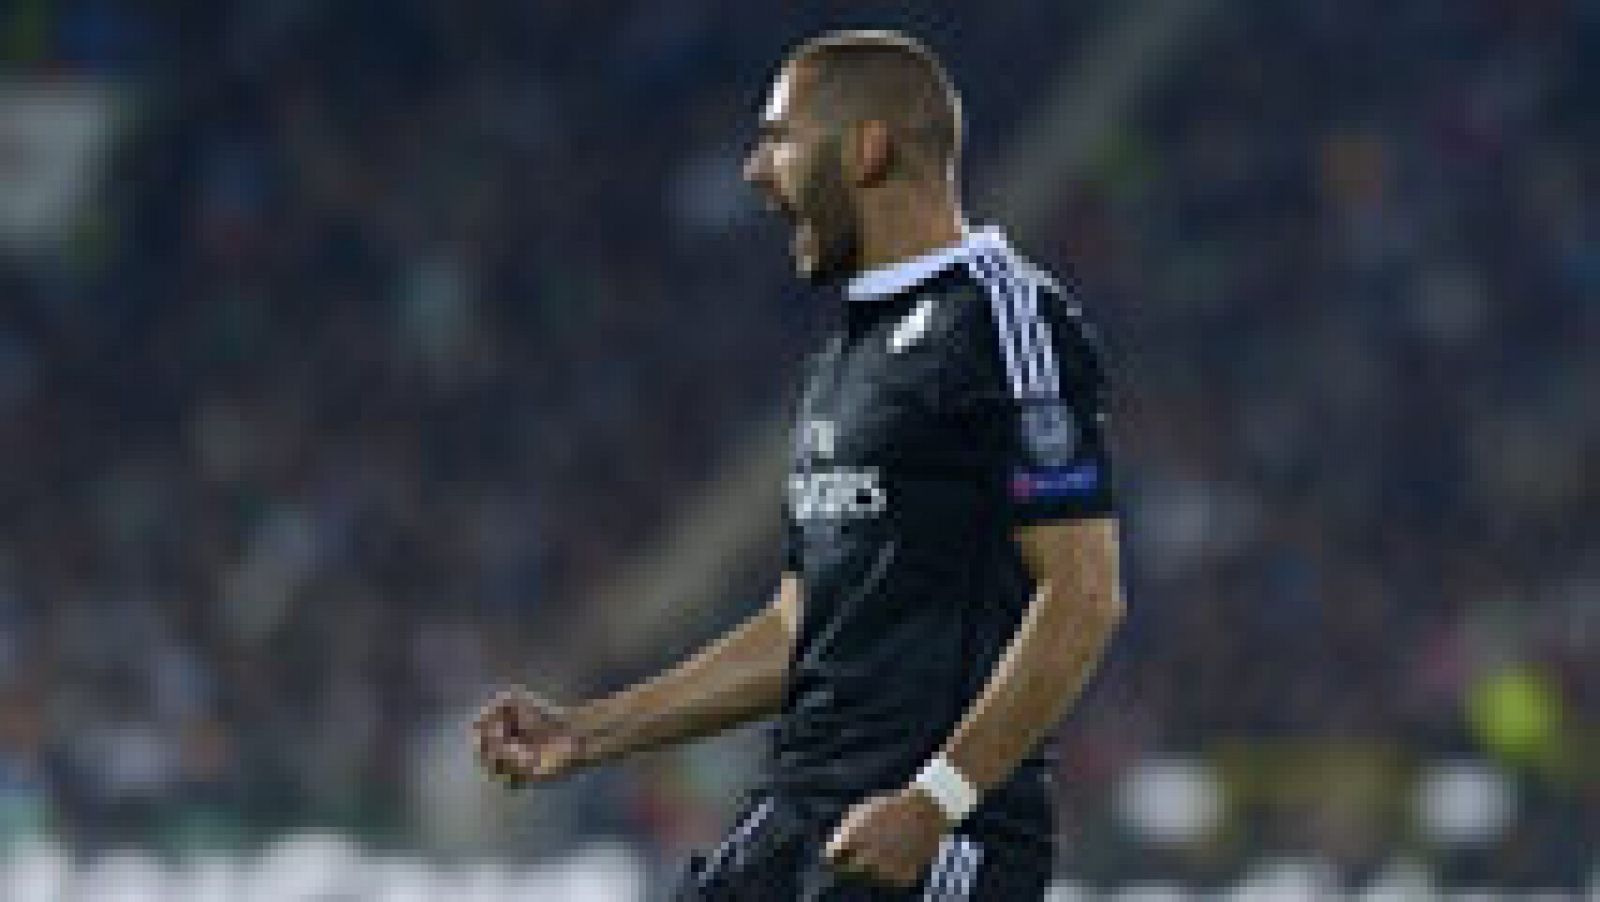 El delantero francés del Real Madrid Karim Benzemá ha marcado el gol de la victoria blanca ante el Ludogorets (2-1), en el minuto 77 de juego, tras rematar un buen pase de Marcelo desde la banda izquierda.